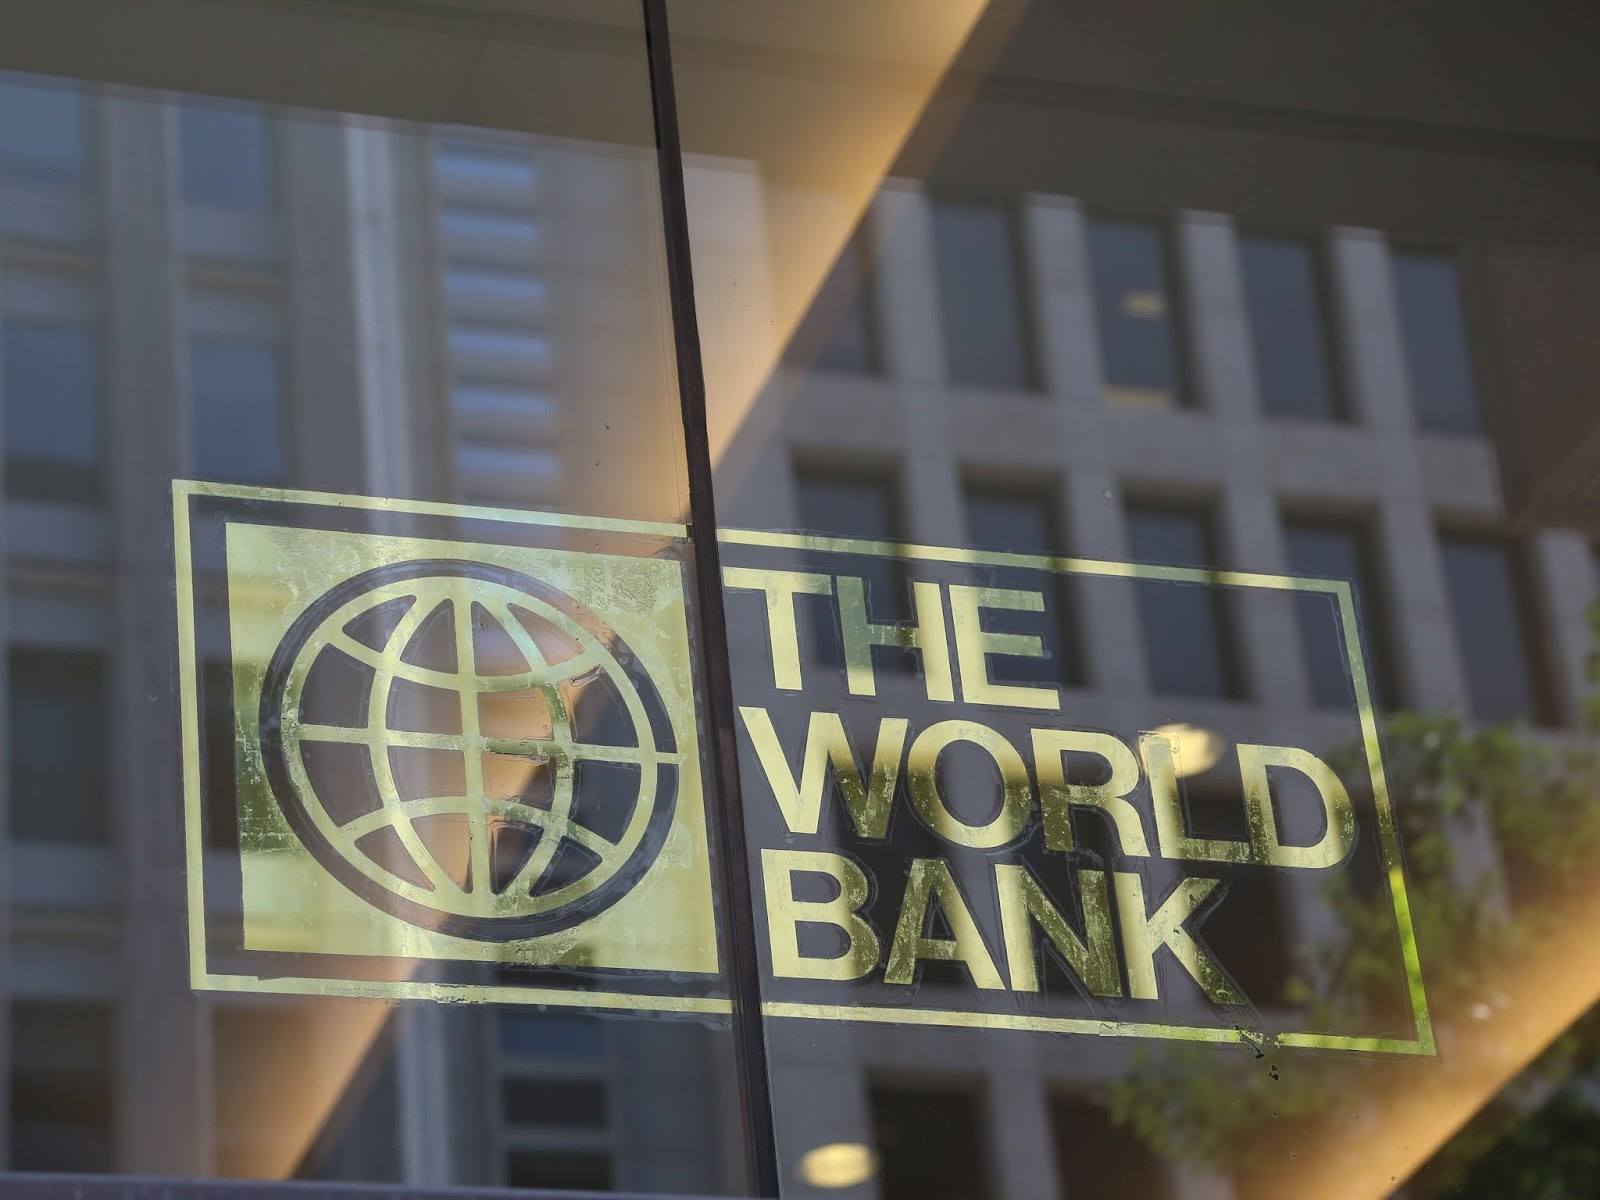 सेवा प्रवाह सुधार र पूर्वाधारका लागि विश्व ब्यांकको रू. १८ अर्ब ऋण सहयोग